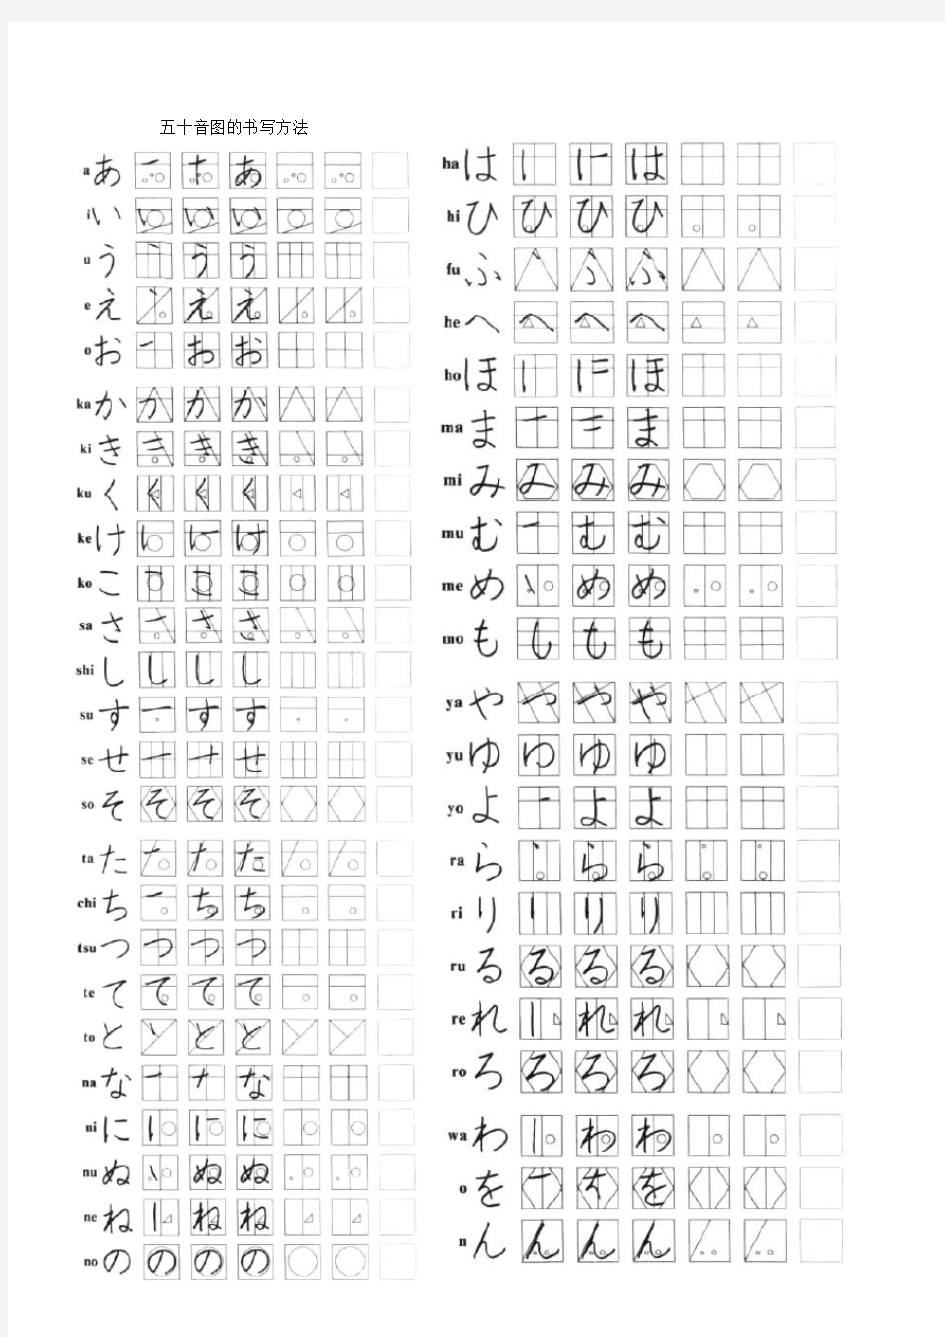 日语五十音图清晰打印版